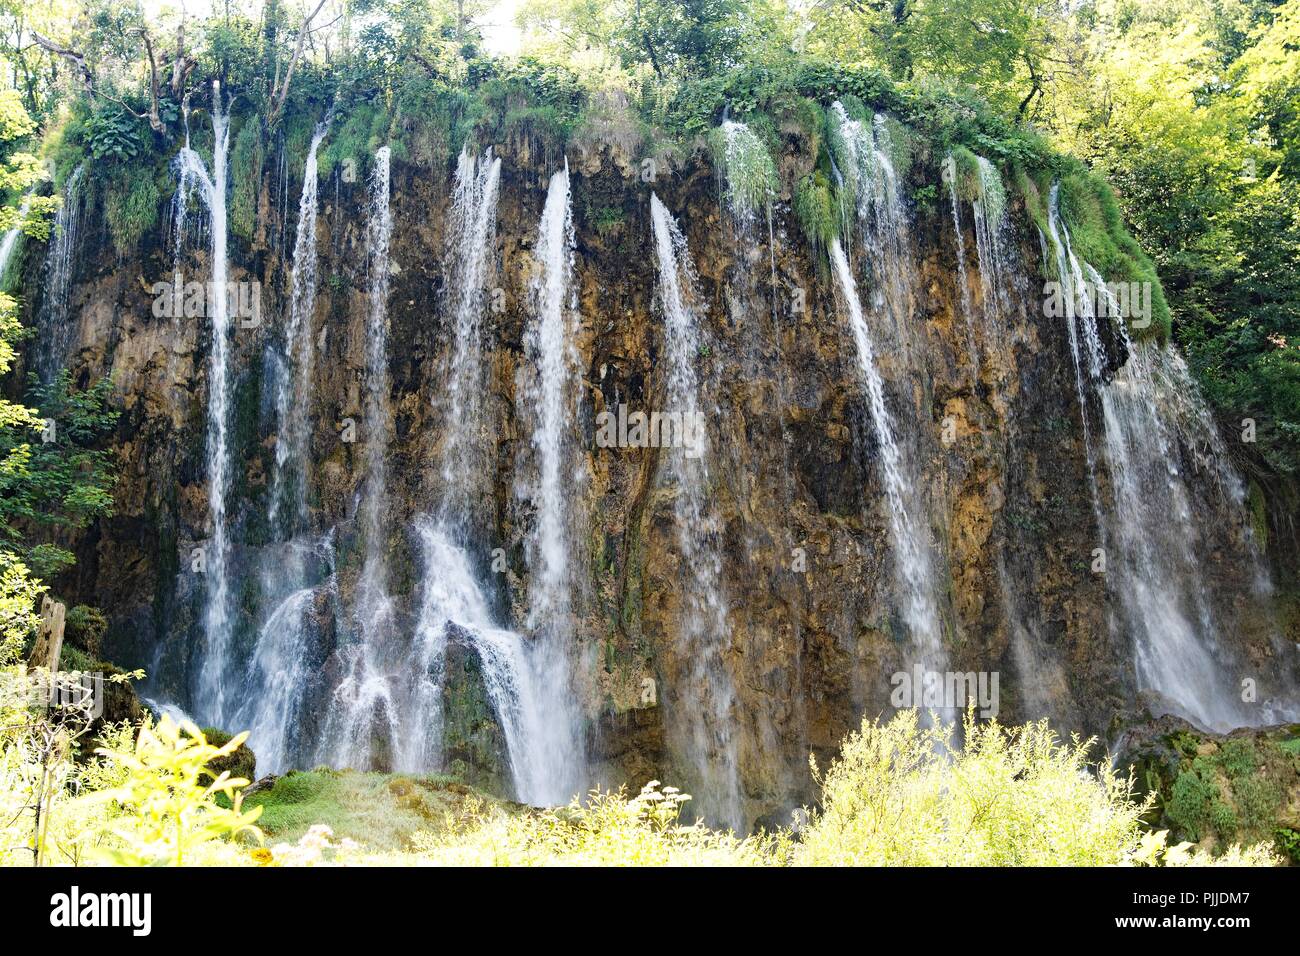 Le parc national des Lacs de Plitvice est le plus populaire de la Croatie une attraction touristique et lieu de beauté naturels protégés. Banque D'Images